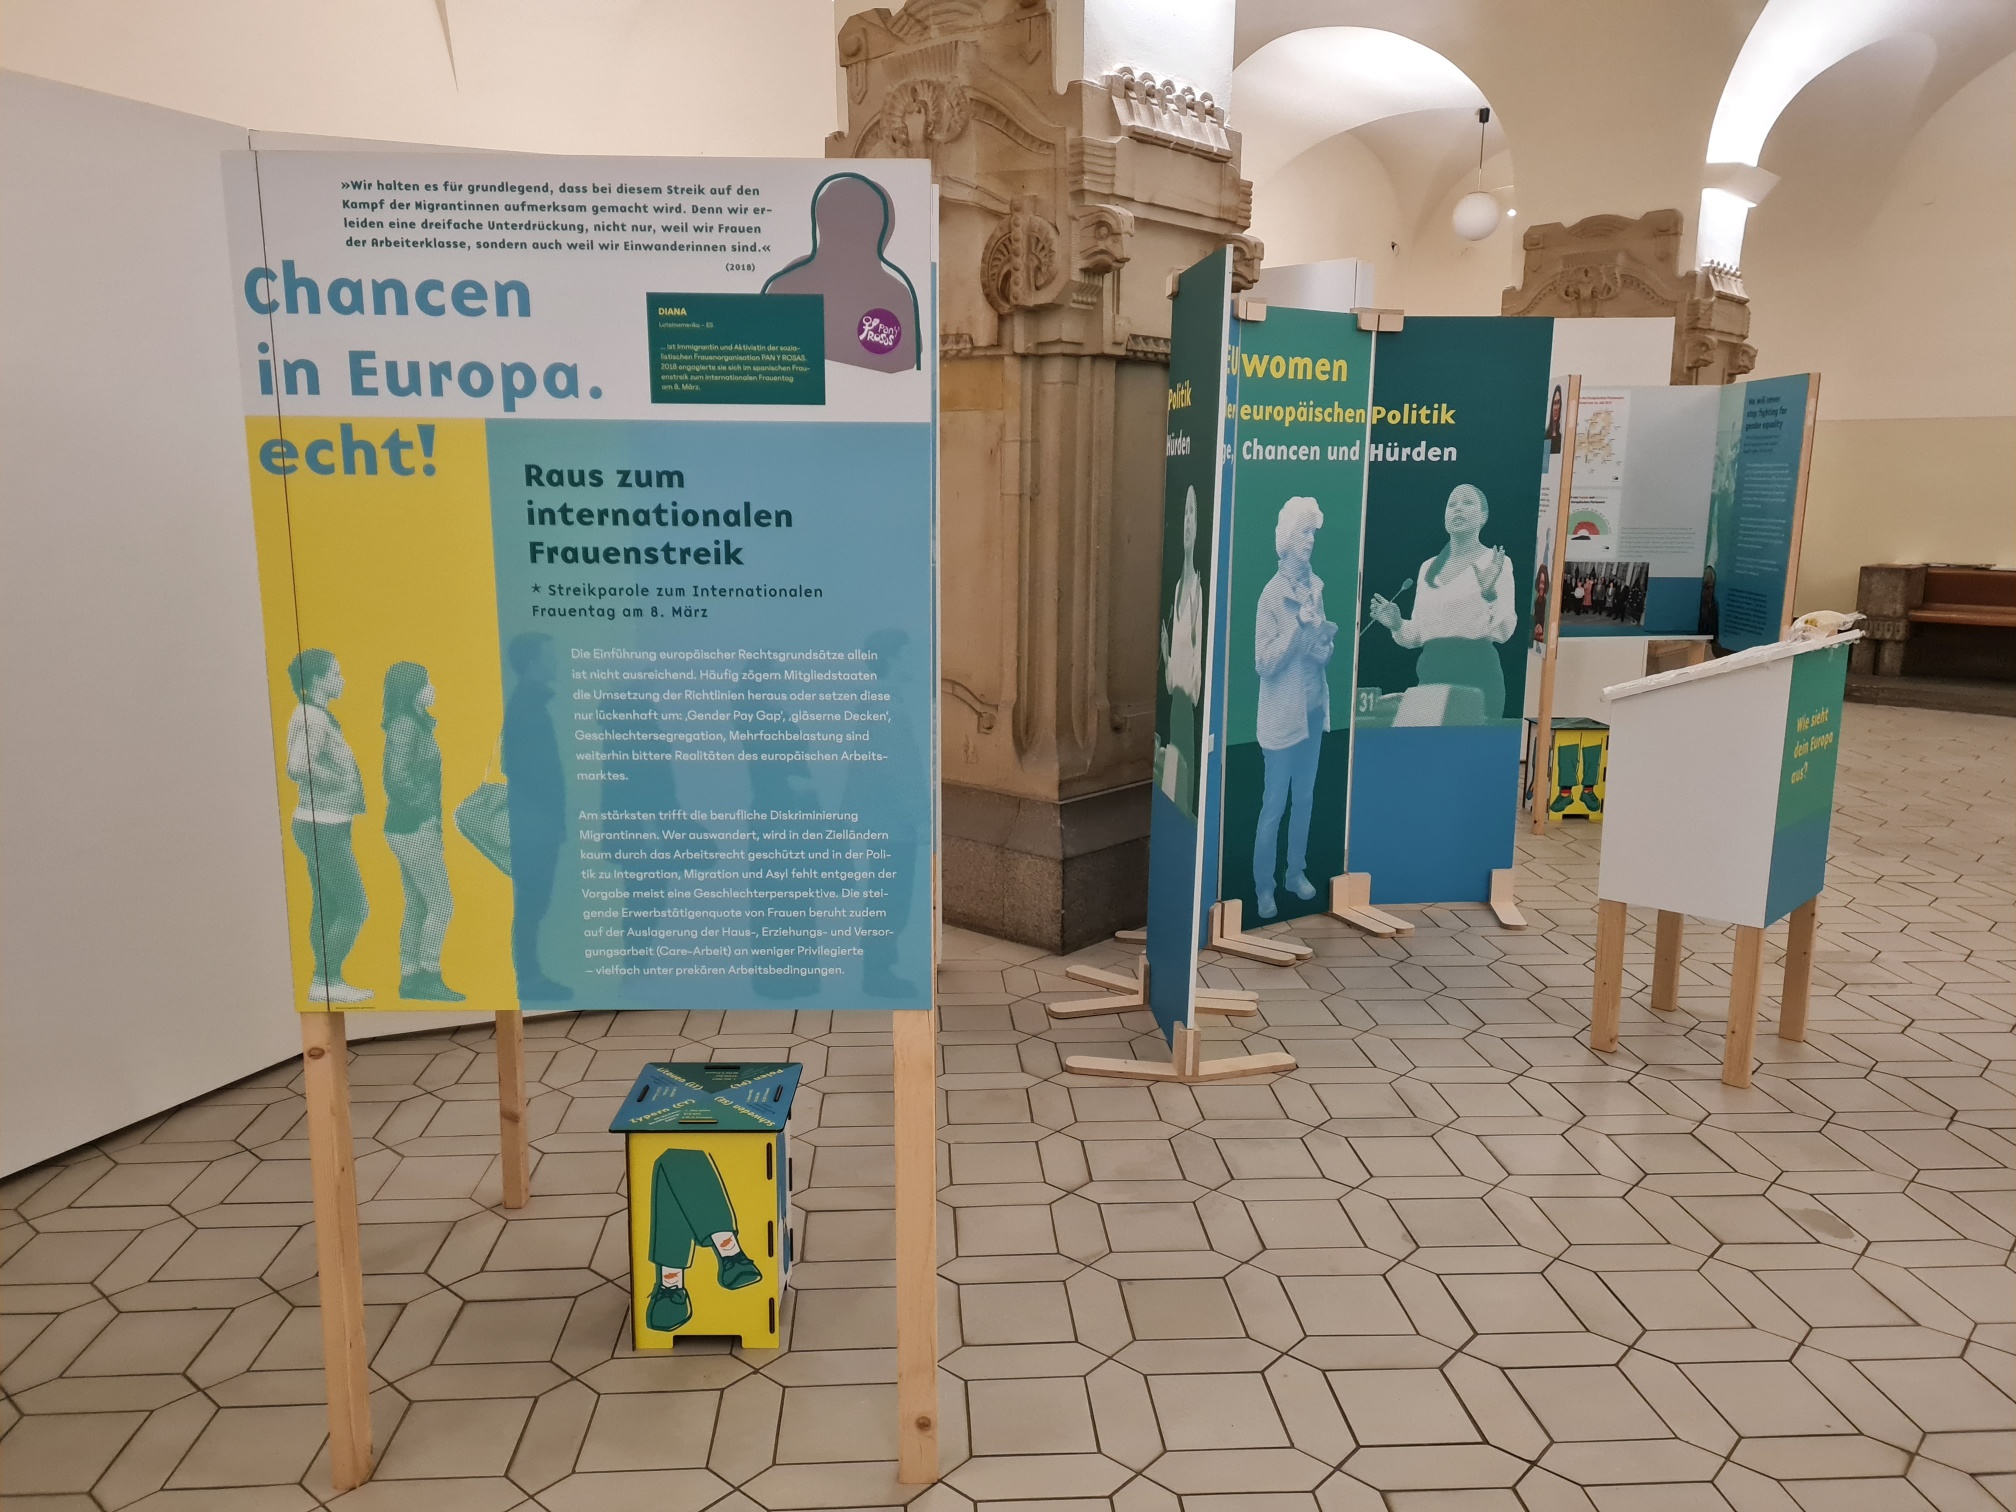 Die Wanderausstellung #EUwomen m März im Rathaus Charlottenburg.
Bild: René Powilleit